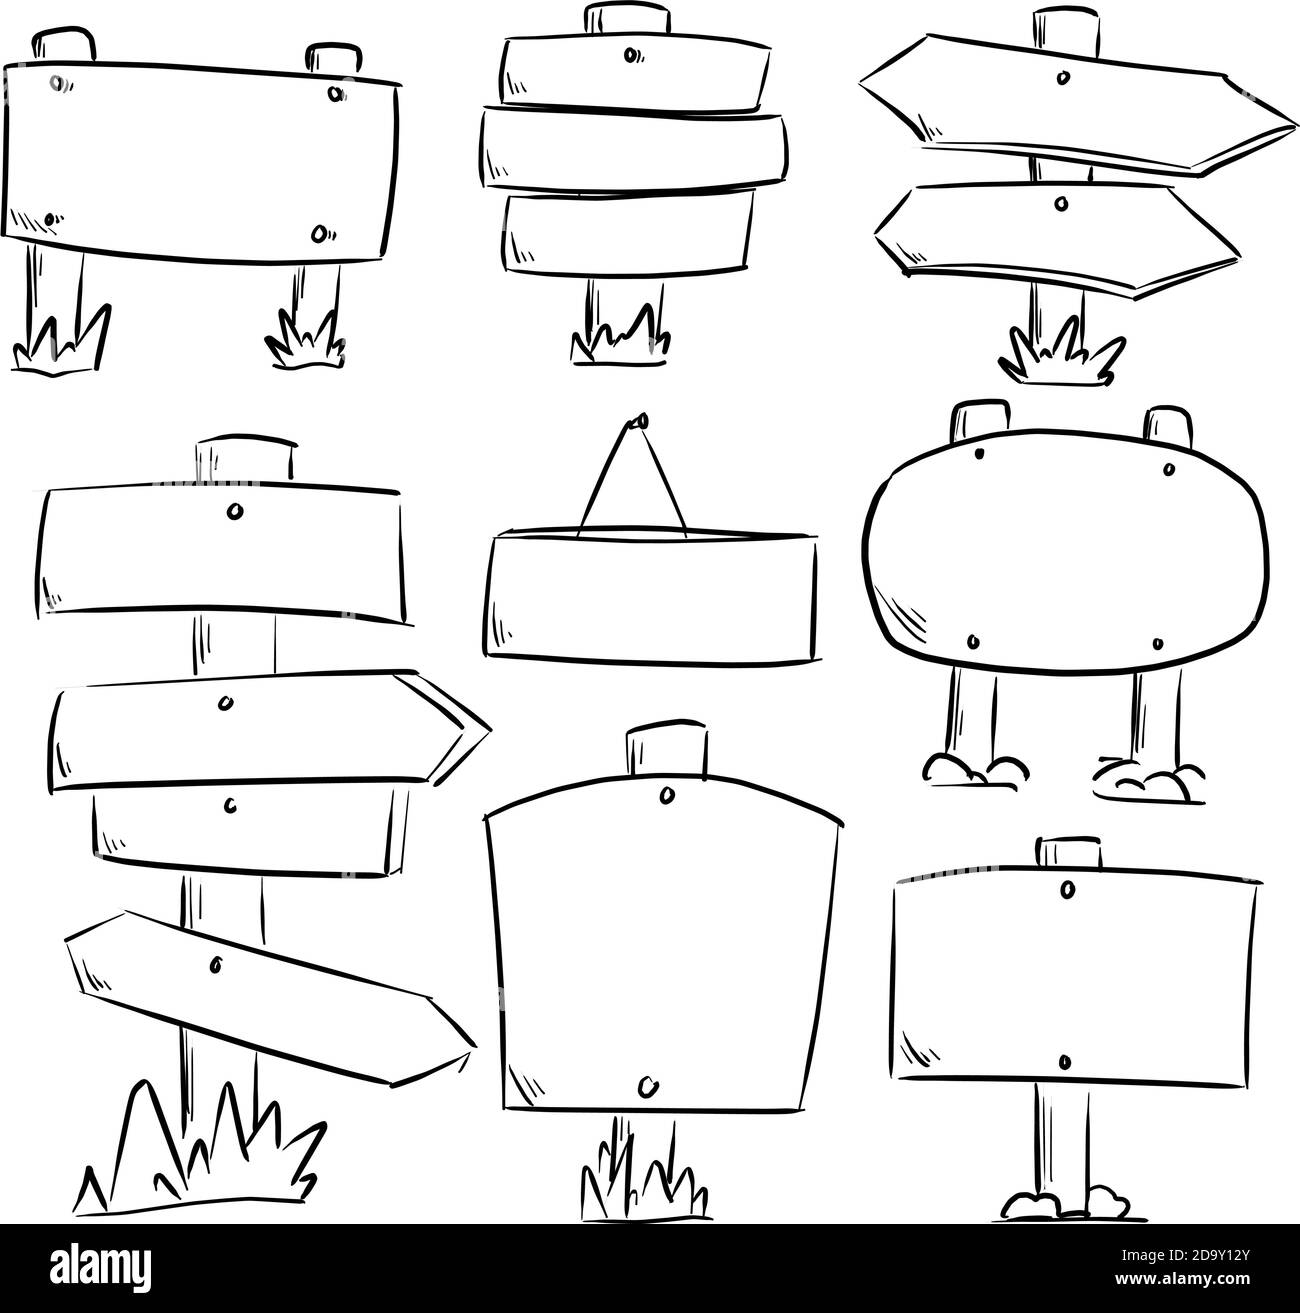 serie di cartelli stradali in legno e frecce dello schizzo dell'illustrazione vettoriale doodle mano disegnata con linee nere isolate su sfondo bianco Illustrazione Vettoriale